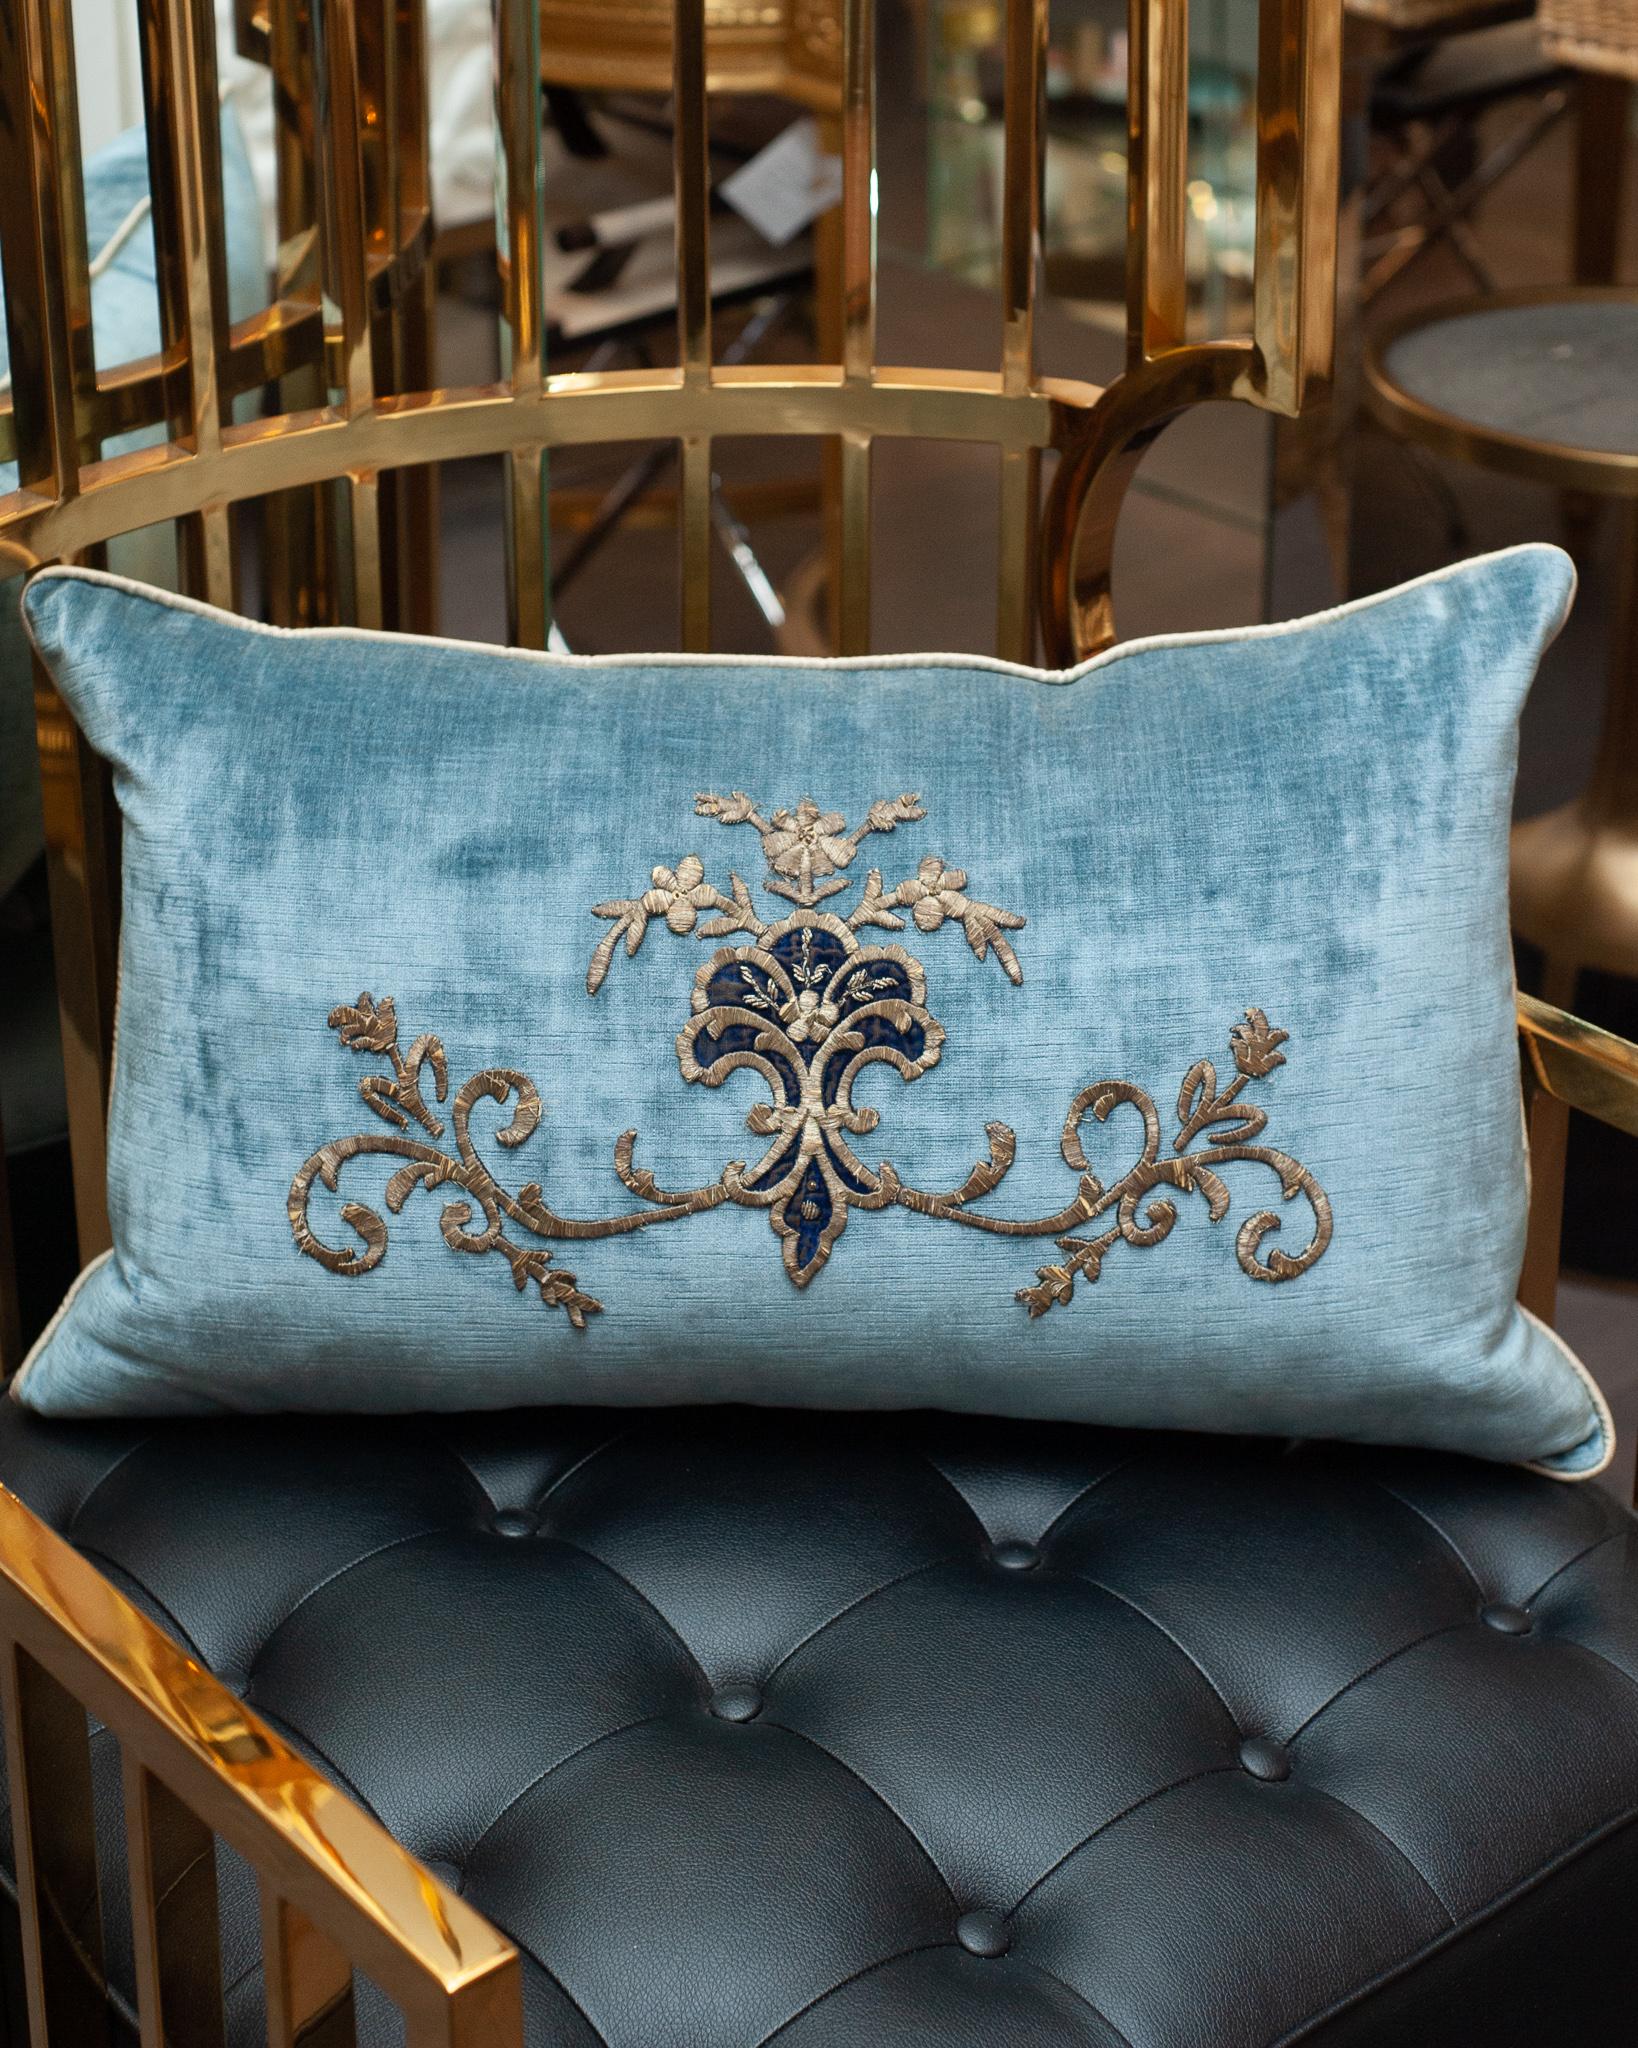 Un superbe grand coussin en velours bleu avec une broderie métallique antique ottomane cousue à la main. Rempli d'un insert de duvet et de plumes pour un oreiller aussi doux et luxueux qu'il est beau.